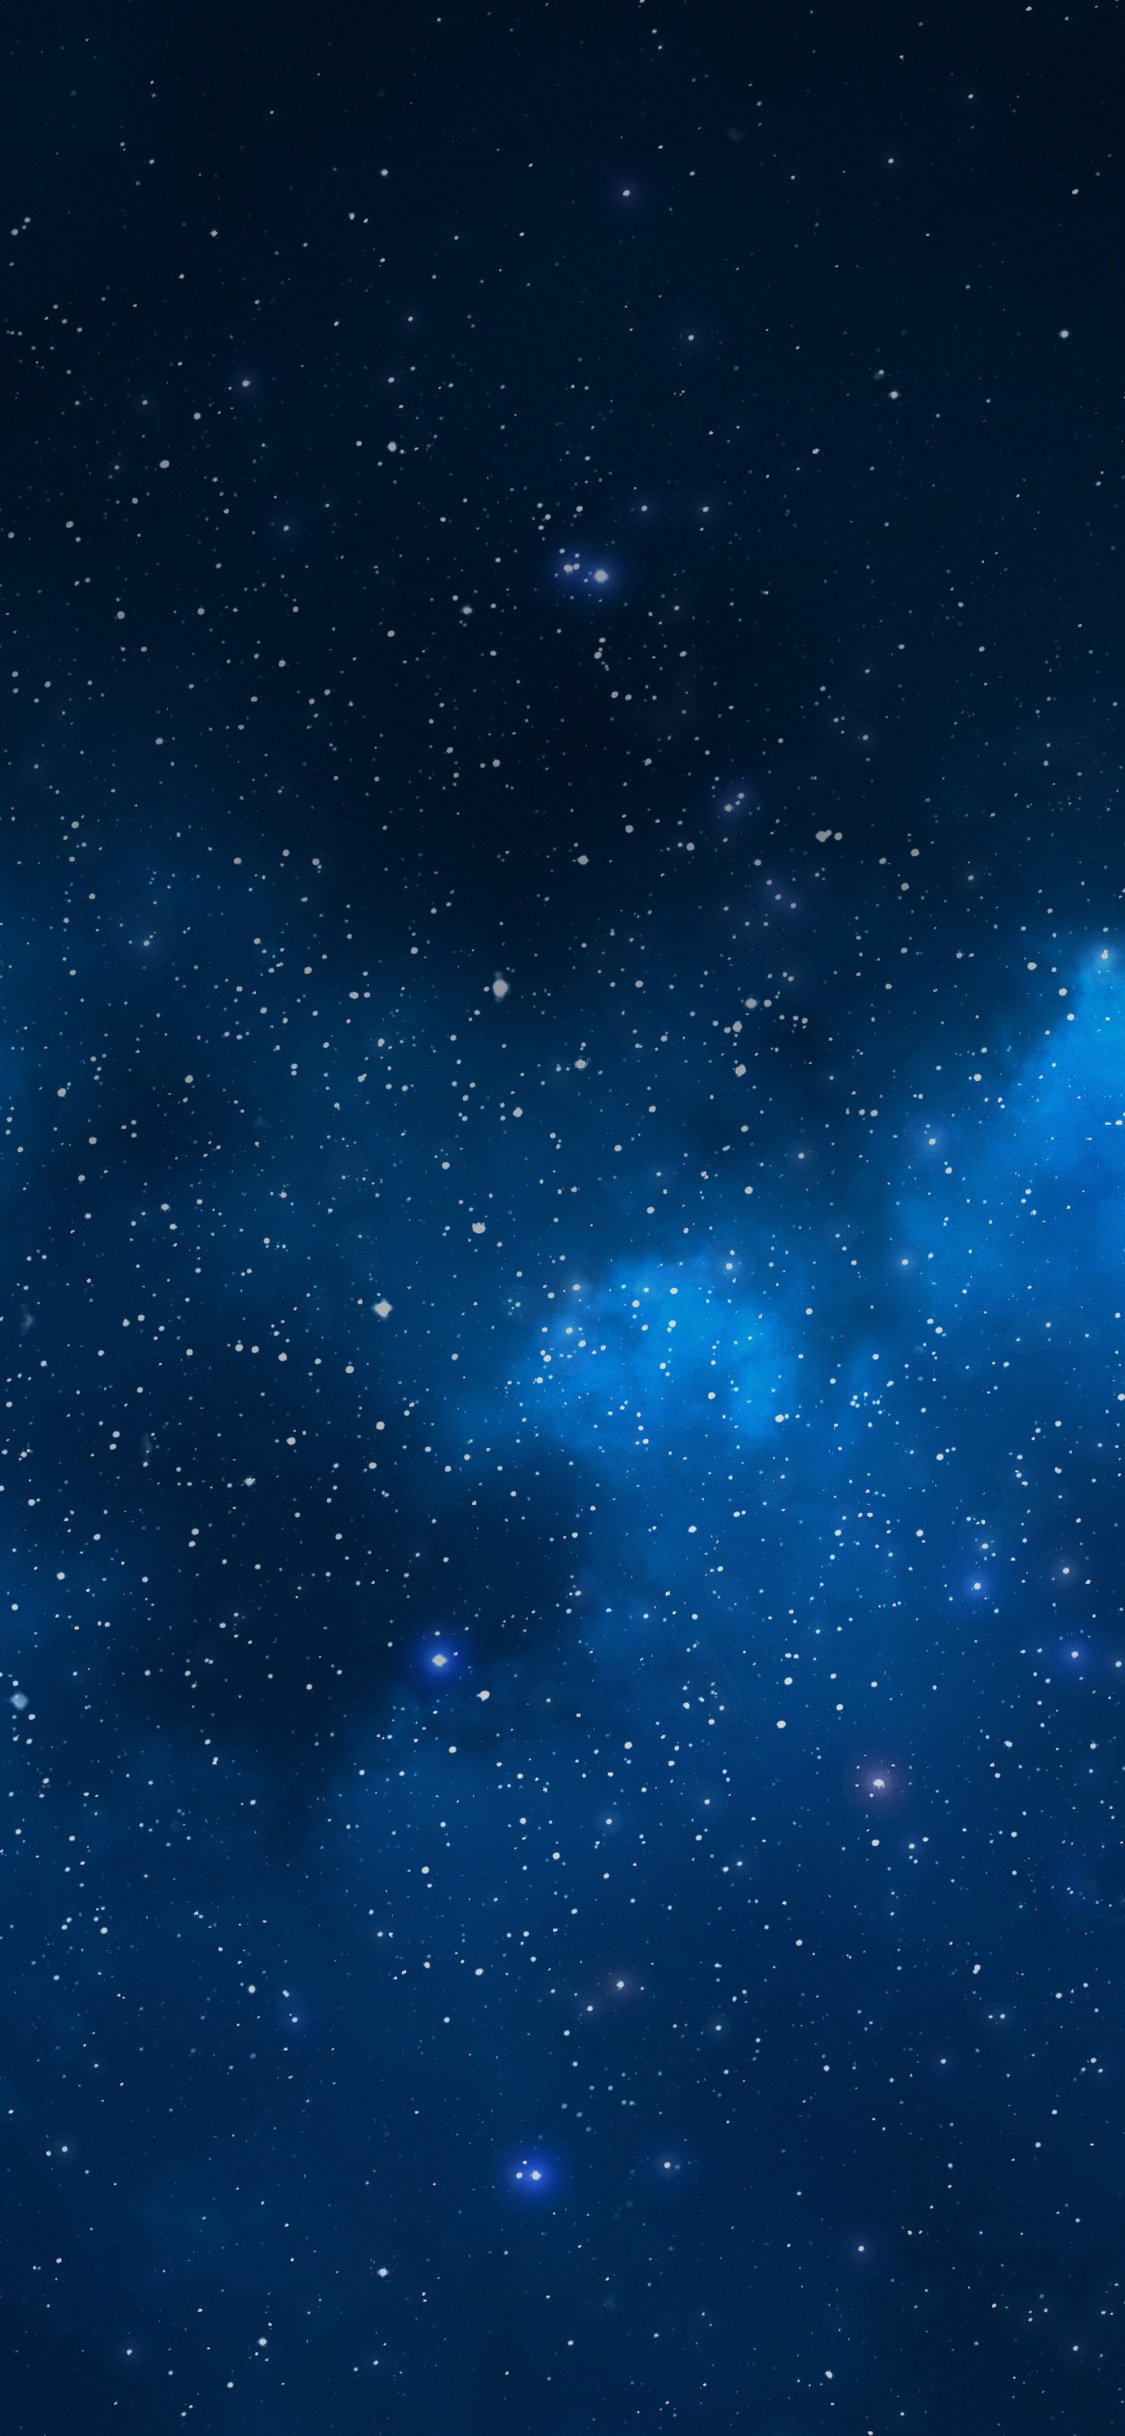 天文学对象, 外层空间, 空间, 夜晚的天空, 明星 壁纸 1125x2436 允许